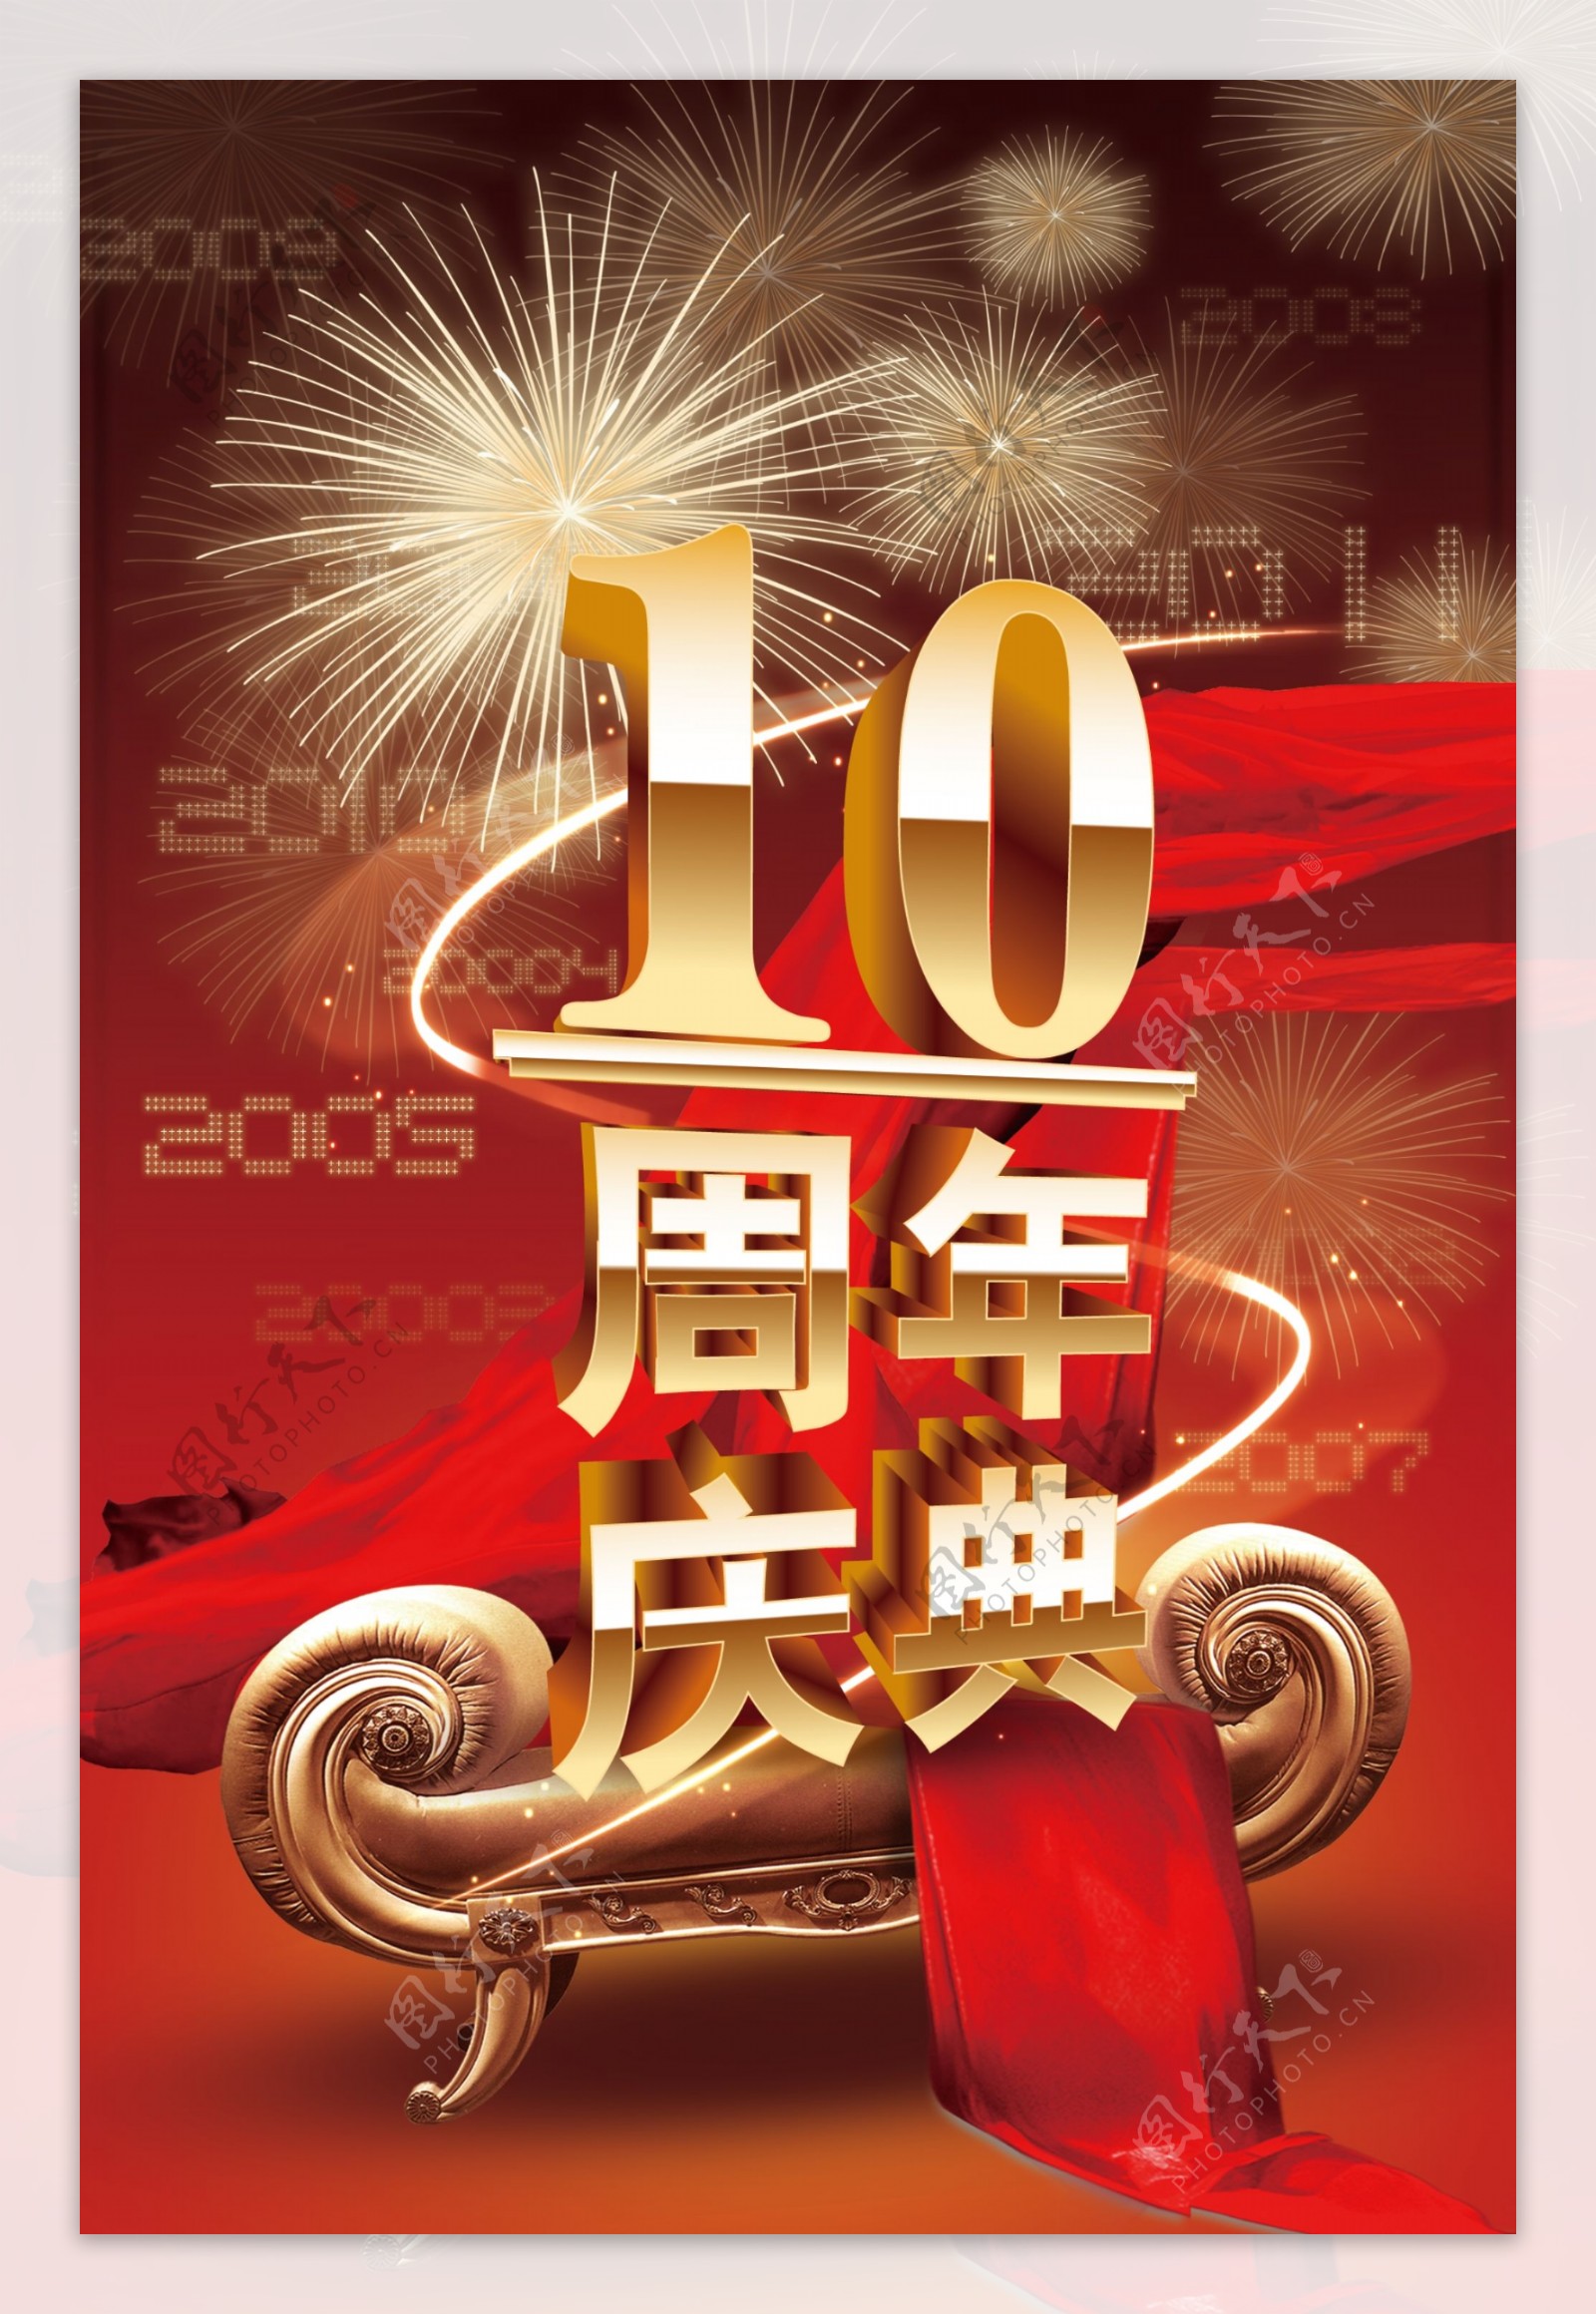 10周年庆典喜庆海报设计PSD源文件